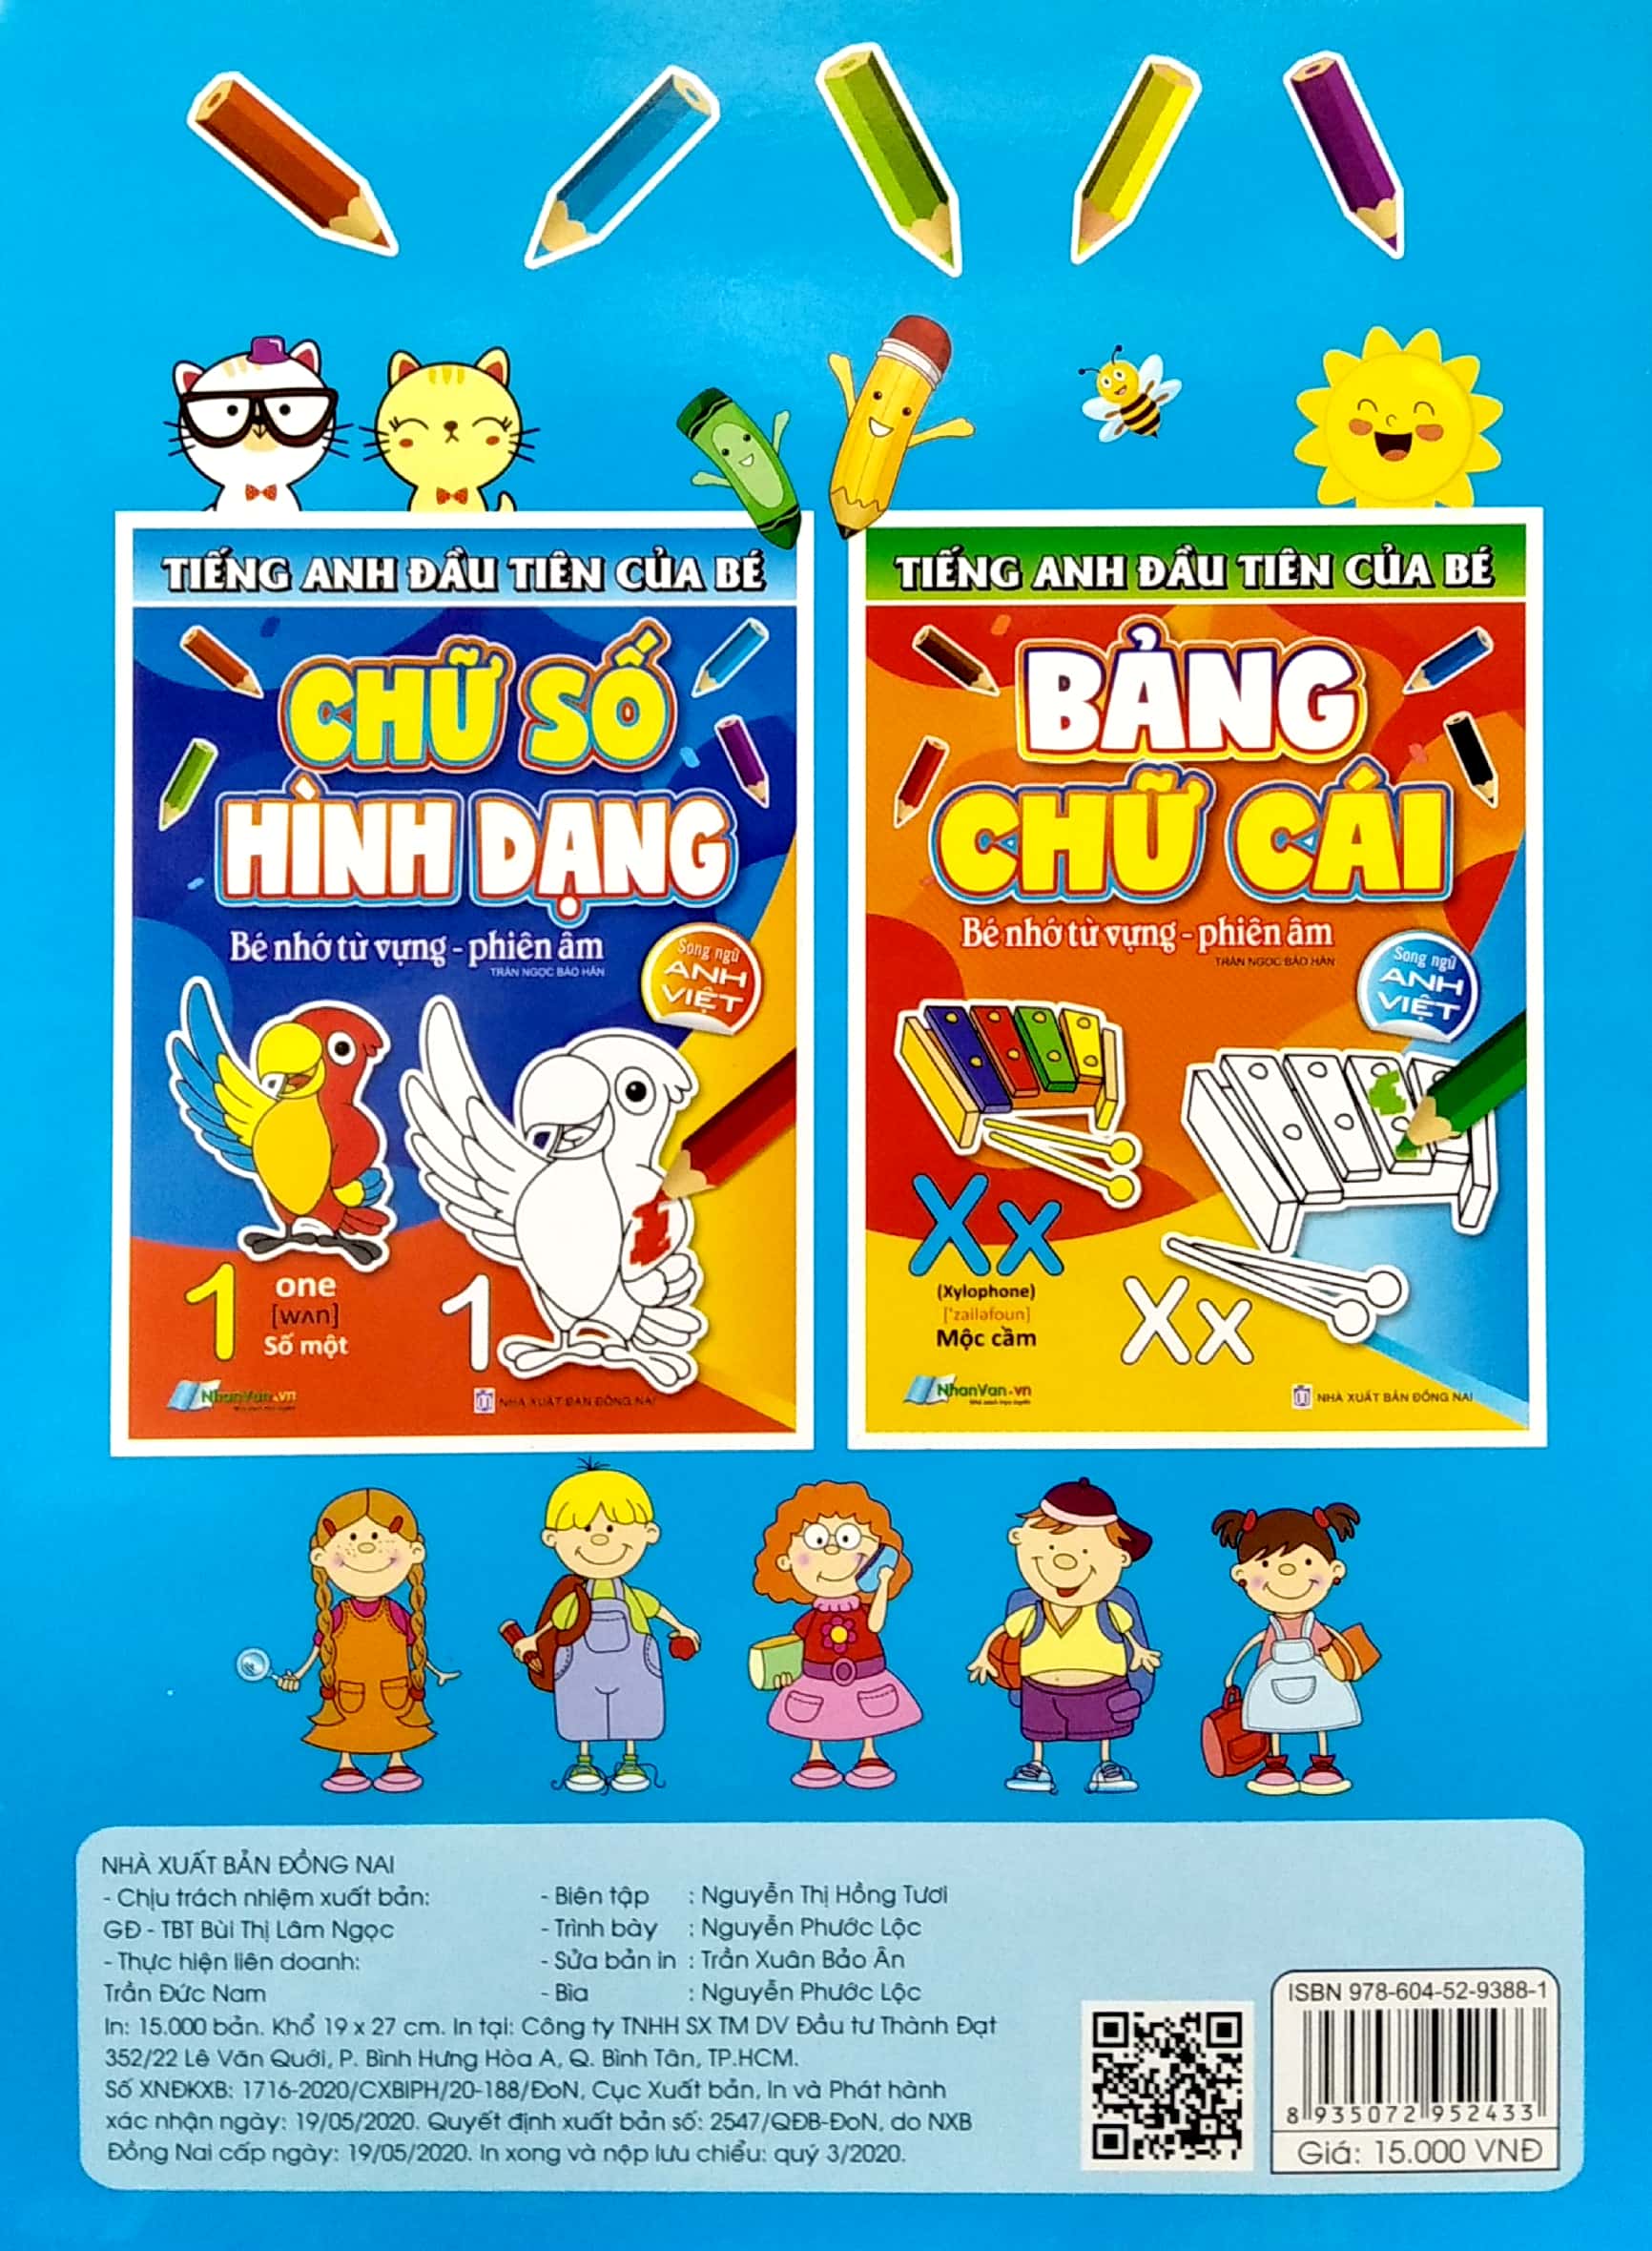 Tiếng Anh Đầu Tiên Của Bé - Chữ Số Hình Dạng Song Ngữ Anh Việt PDF